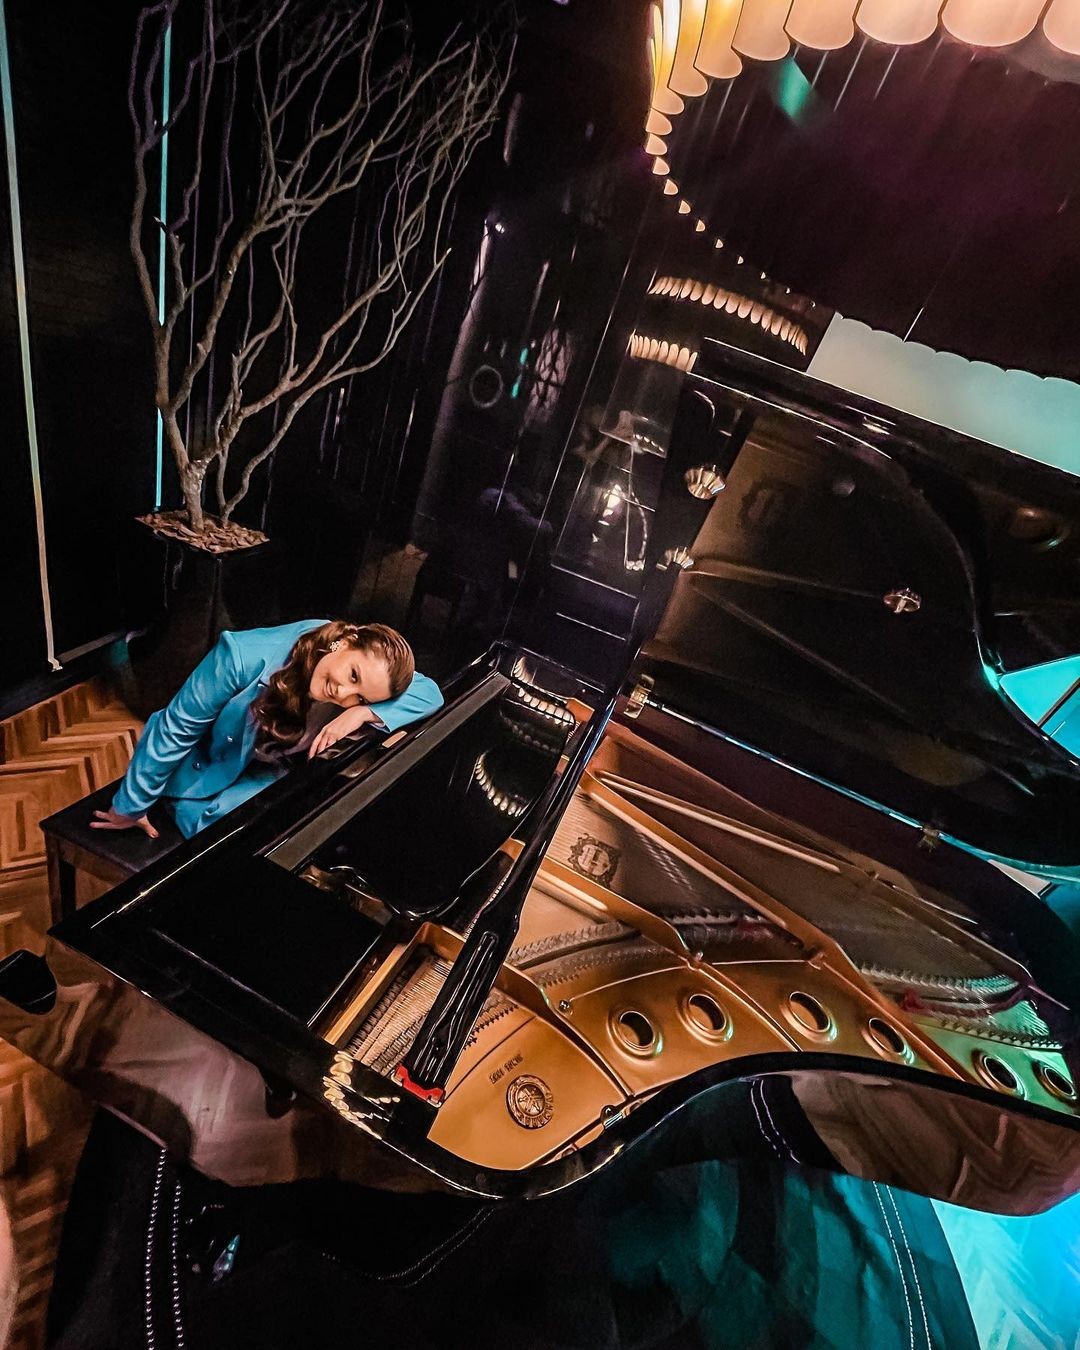 Maiara posa com look totalmente azul em piano (Foto: Reprodução / Instagram)